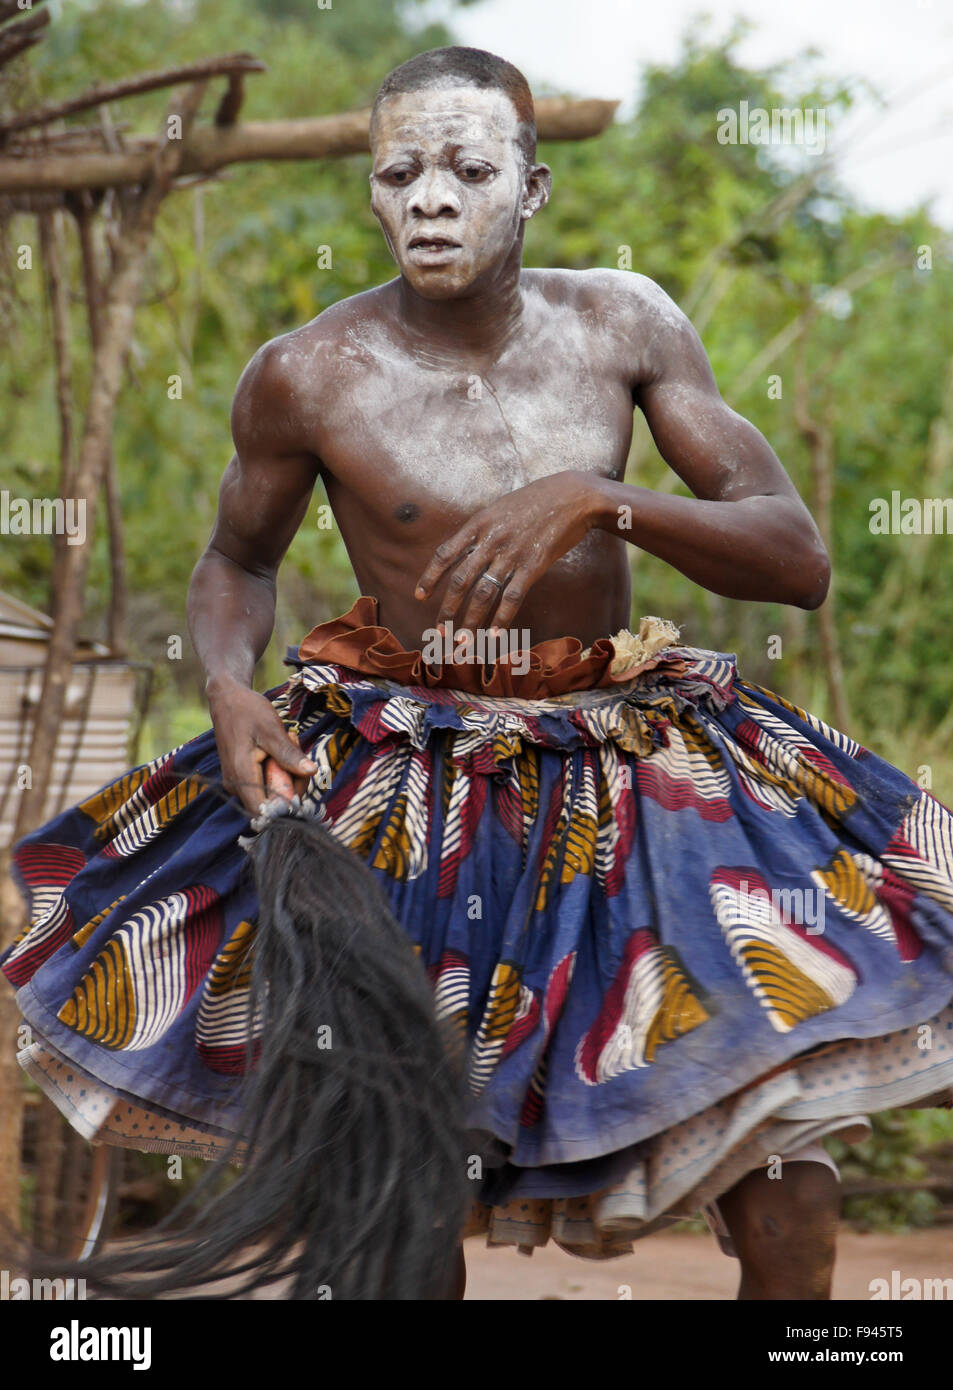 Vaudou (voodoo) Cérémonie pour Gambada divinité, où cet homme est possédé par un esprit, village près d'Abomey, Bénin Banque D'Images